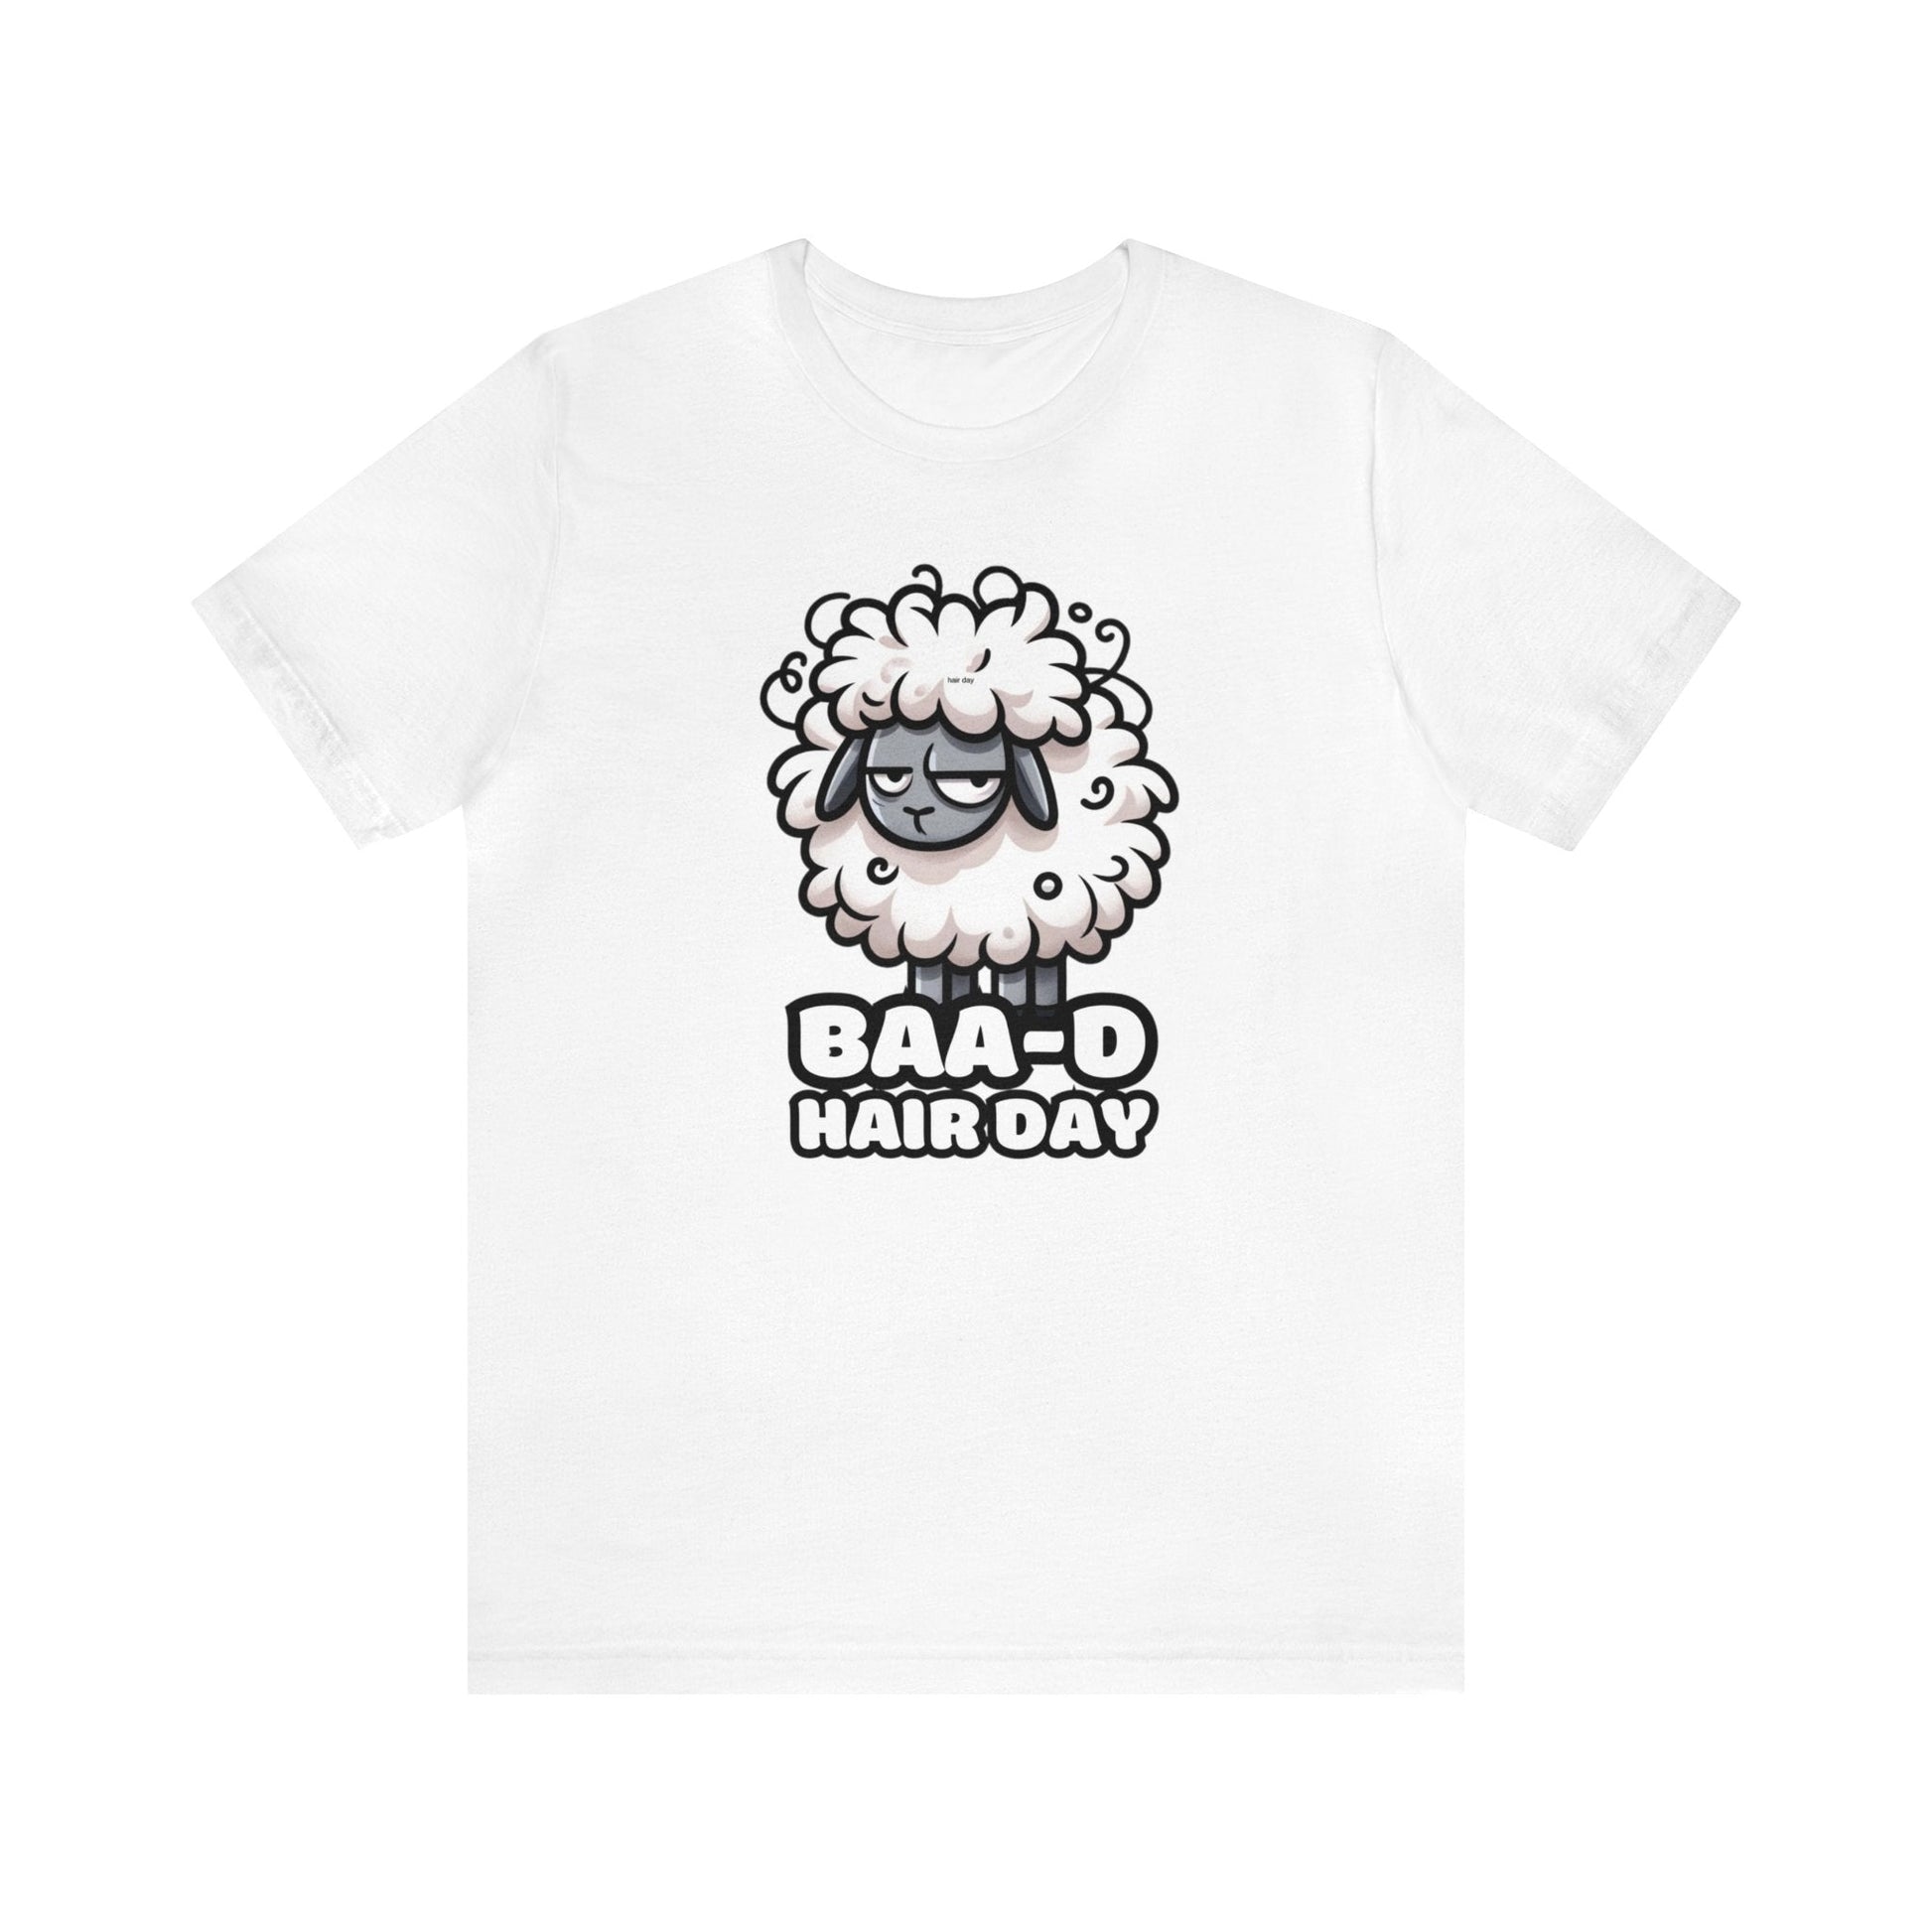 Baa-d Hair - Sheep T-shirt White / S